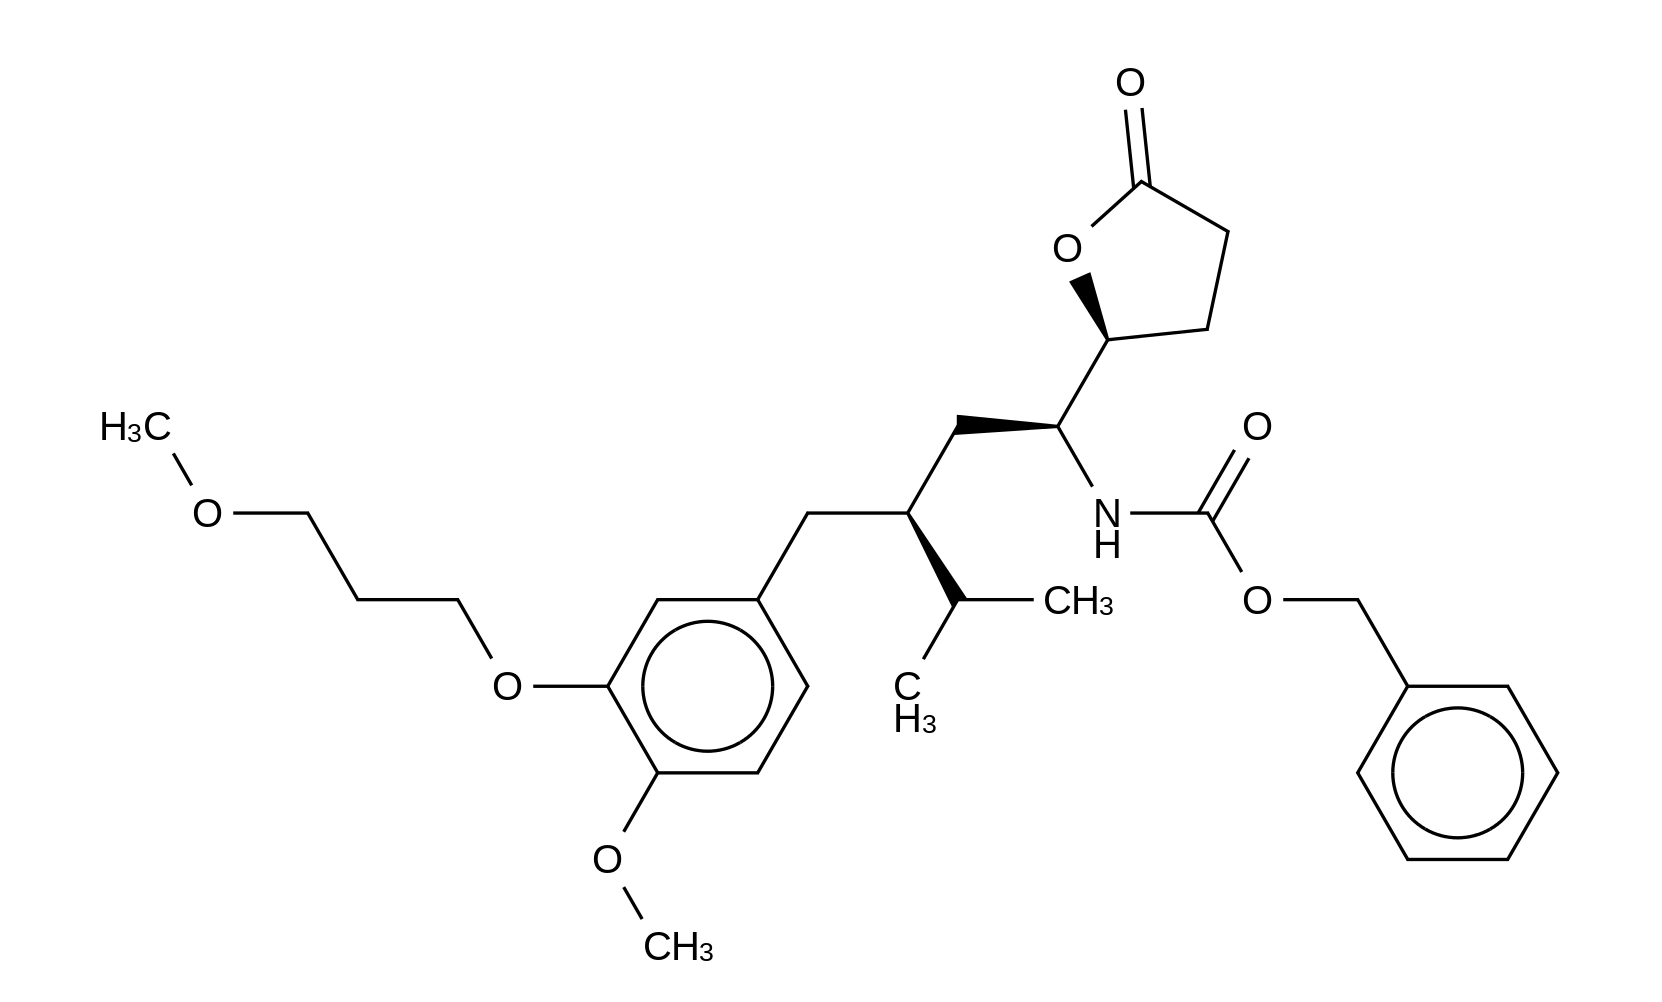 [(1S,3S)-3-[[4-Methoxy-3-(3-methoxypropoxy)phenyl]methyl]-4-methyl-1-[(2S)-tetrahydro-5-oxo-2-furanyl]pentyl]carbamic Acid Benzyl Ester